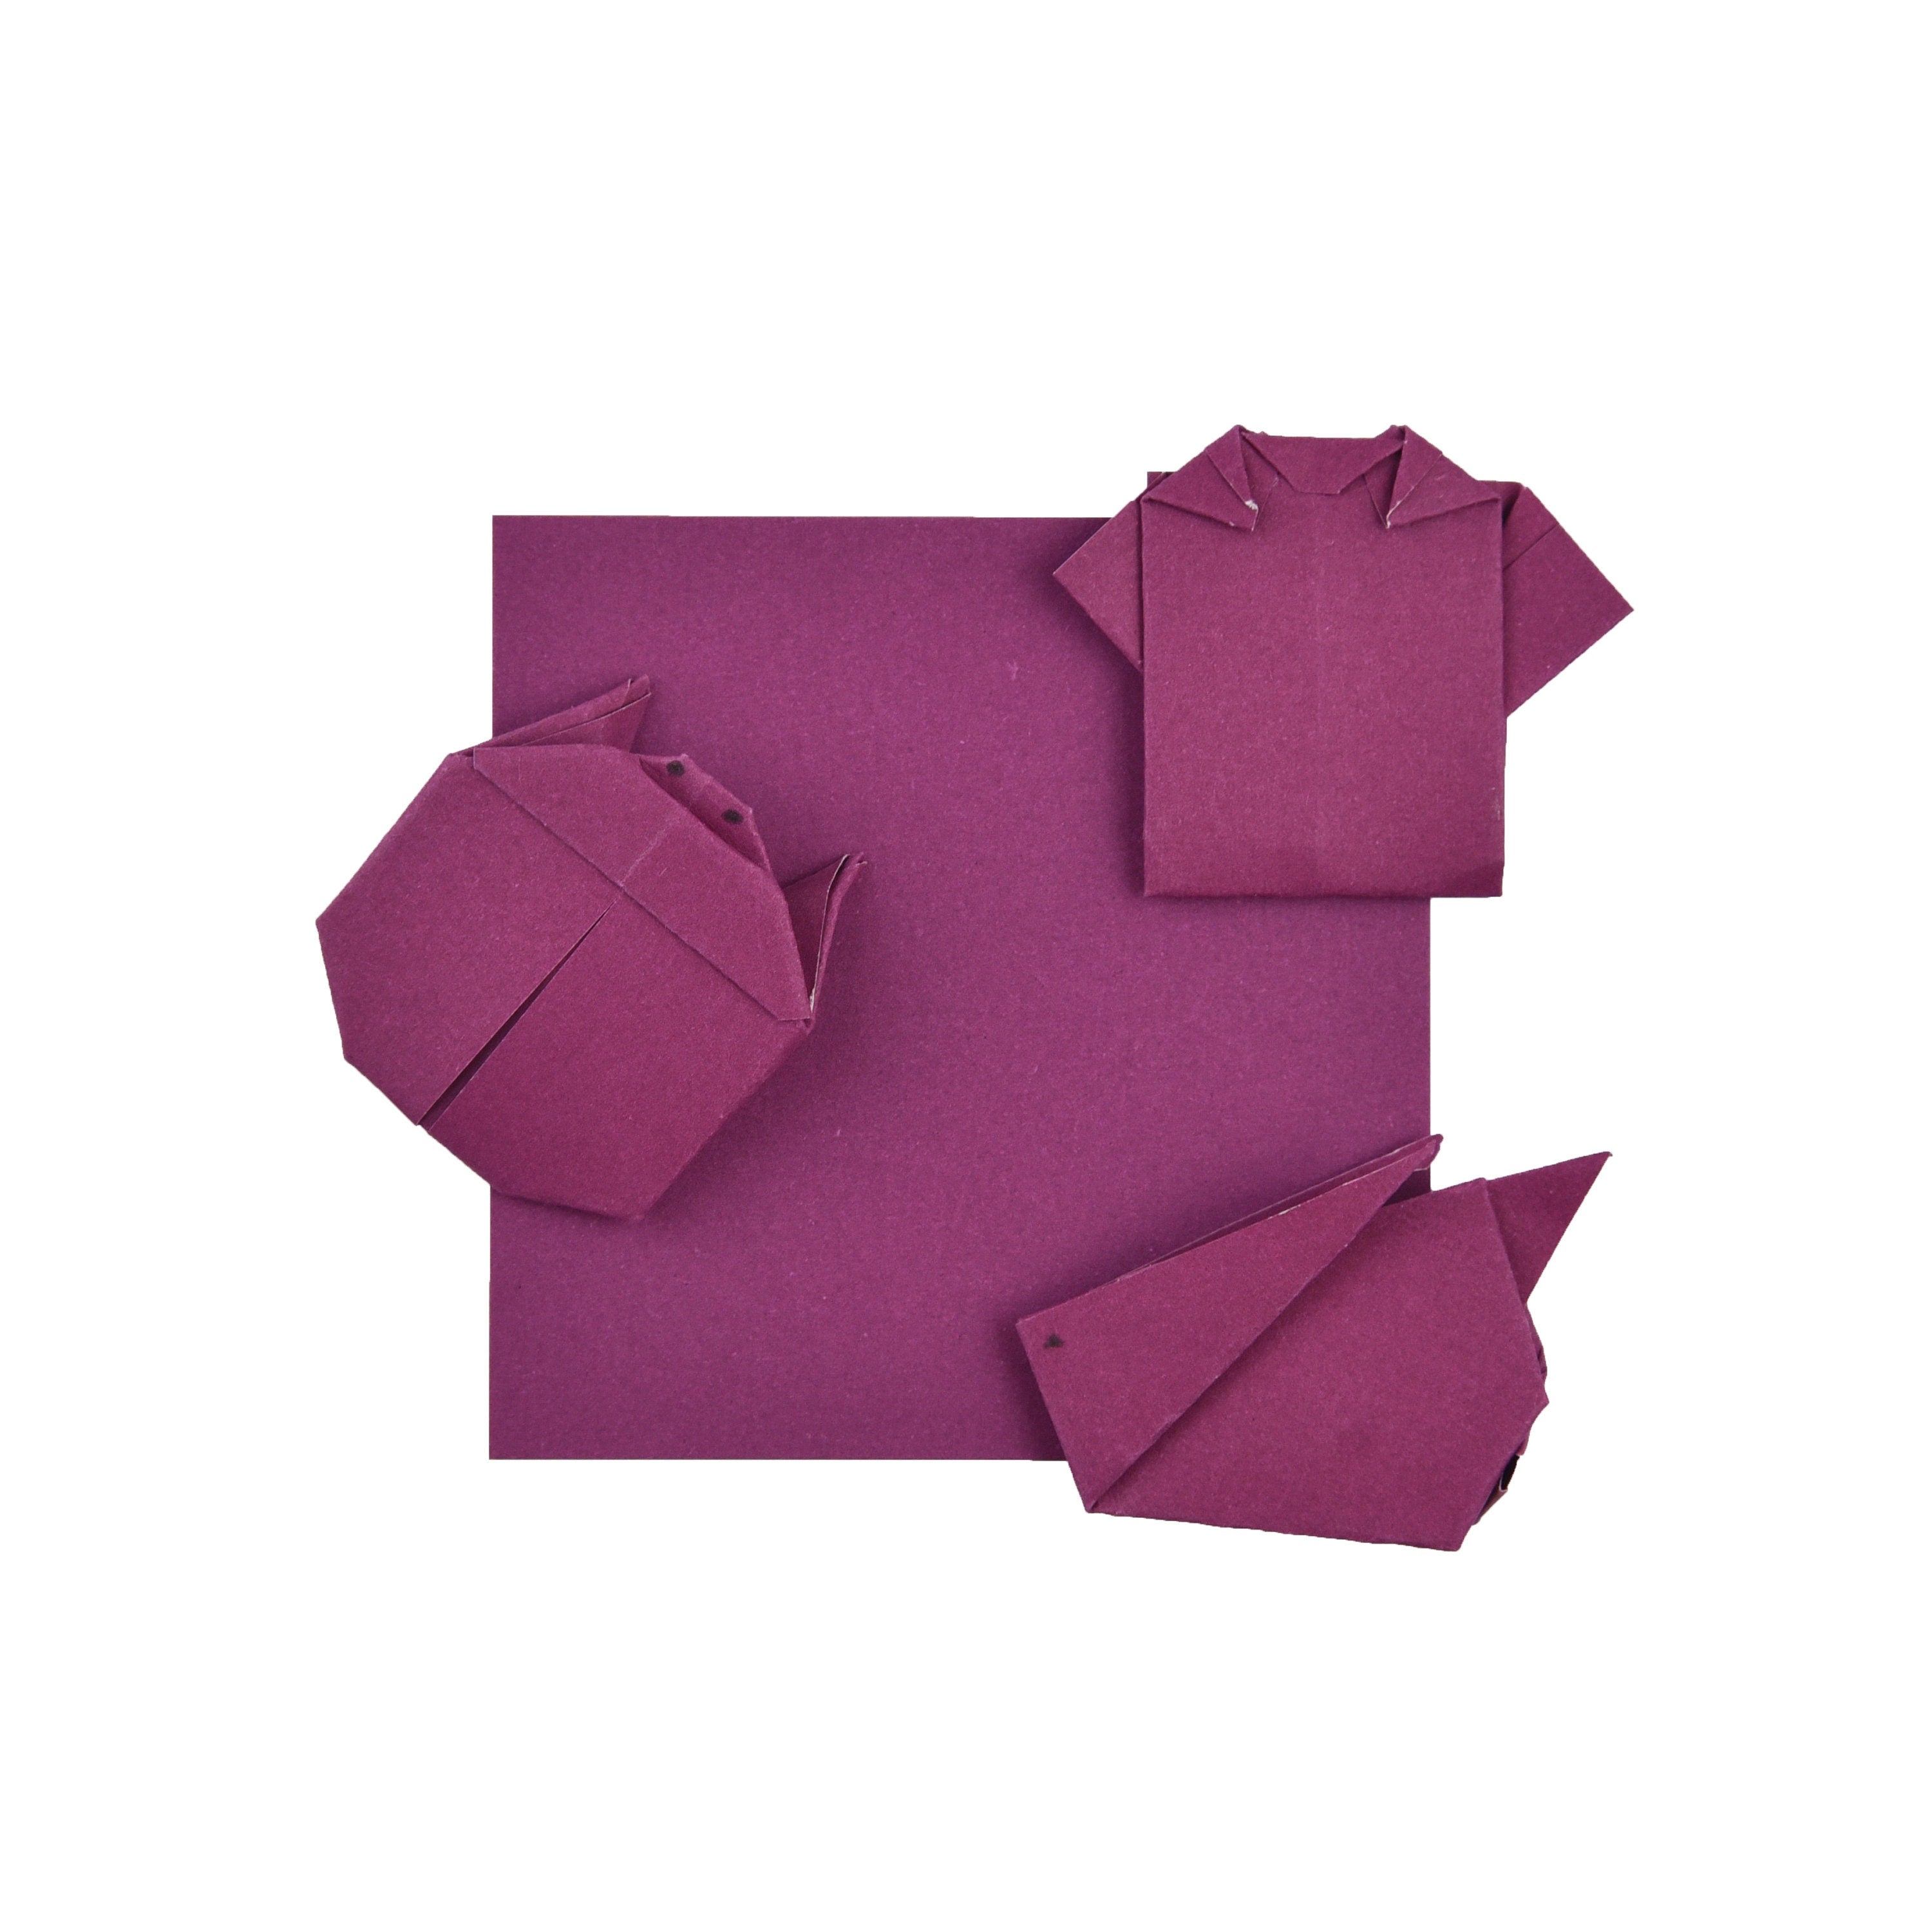 100 hojas de papel de origami color burdeos - 6x6 pulgadas - Paquete de papel cuadrado para plegado, grullas de origami y decoración - S09